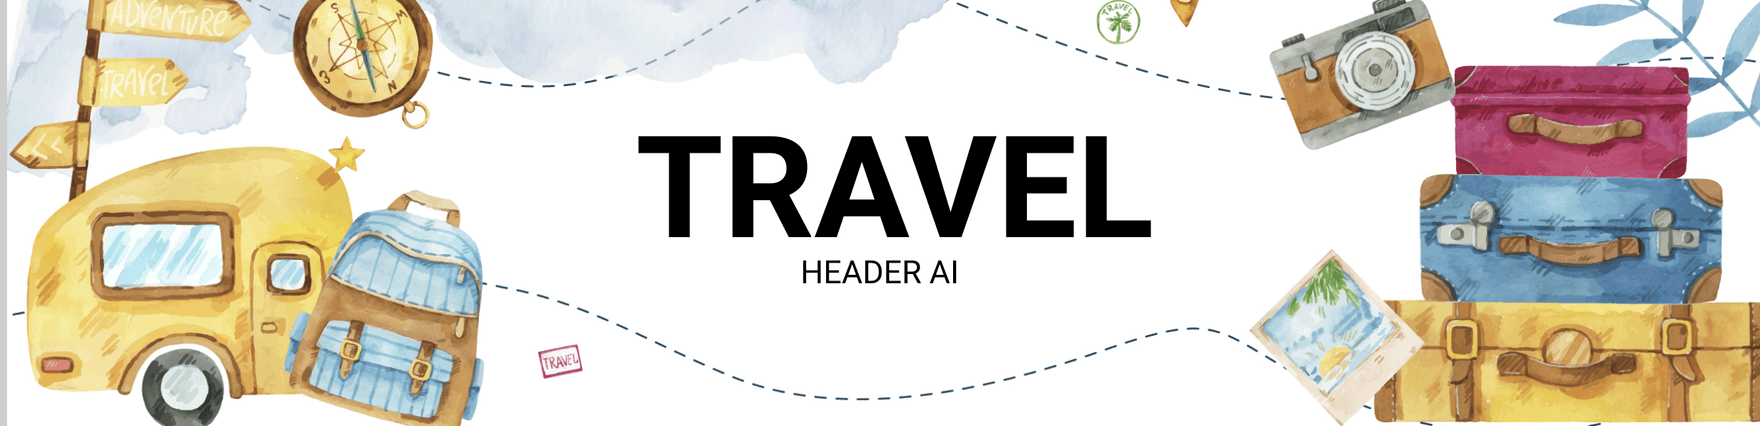 Travel Header AI